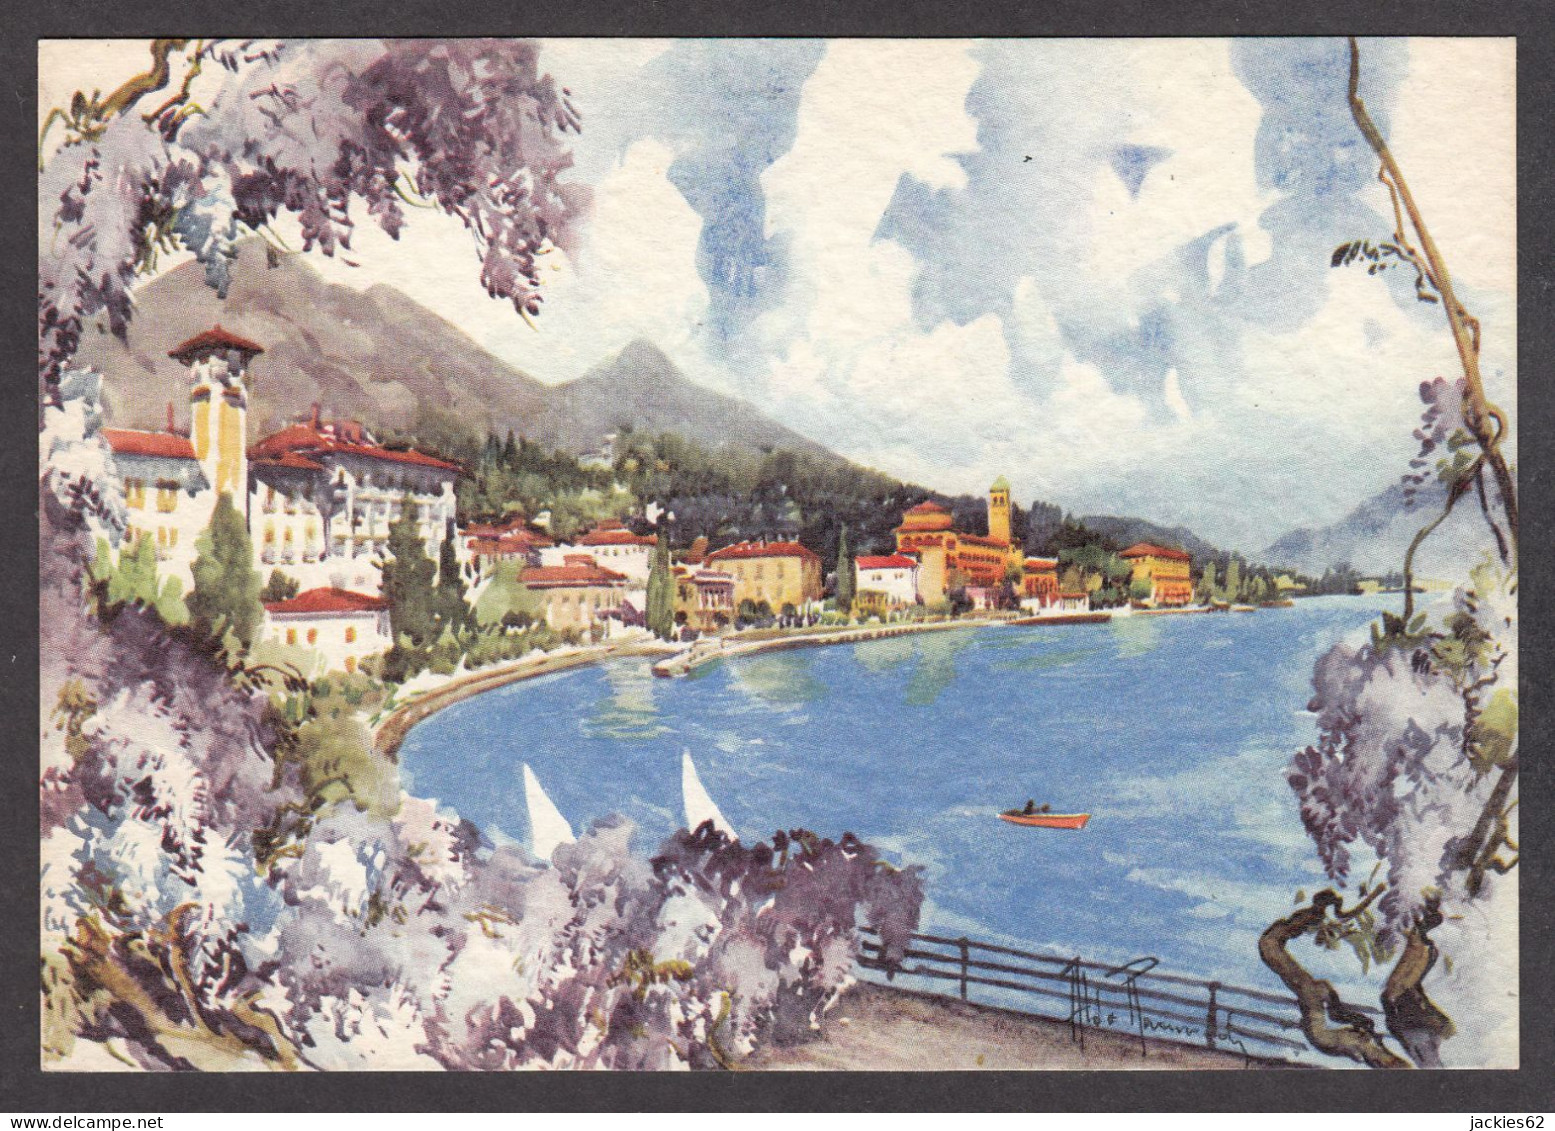 PR345/ Aldo RAIMONDI, *Gardone Riviera, Lago Di Garda* - Peintures & Tableaux